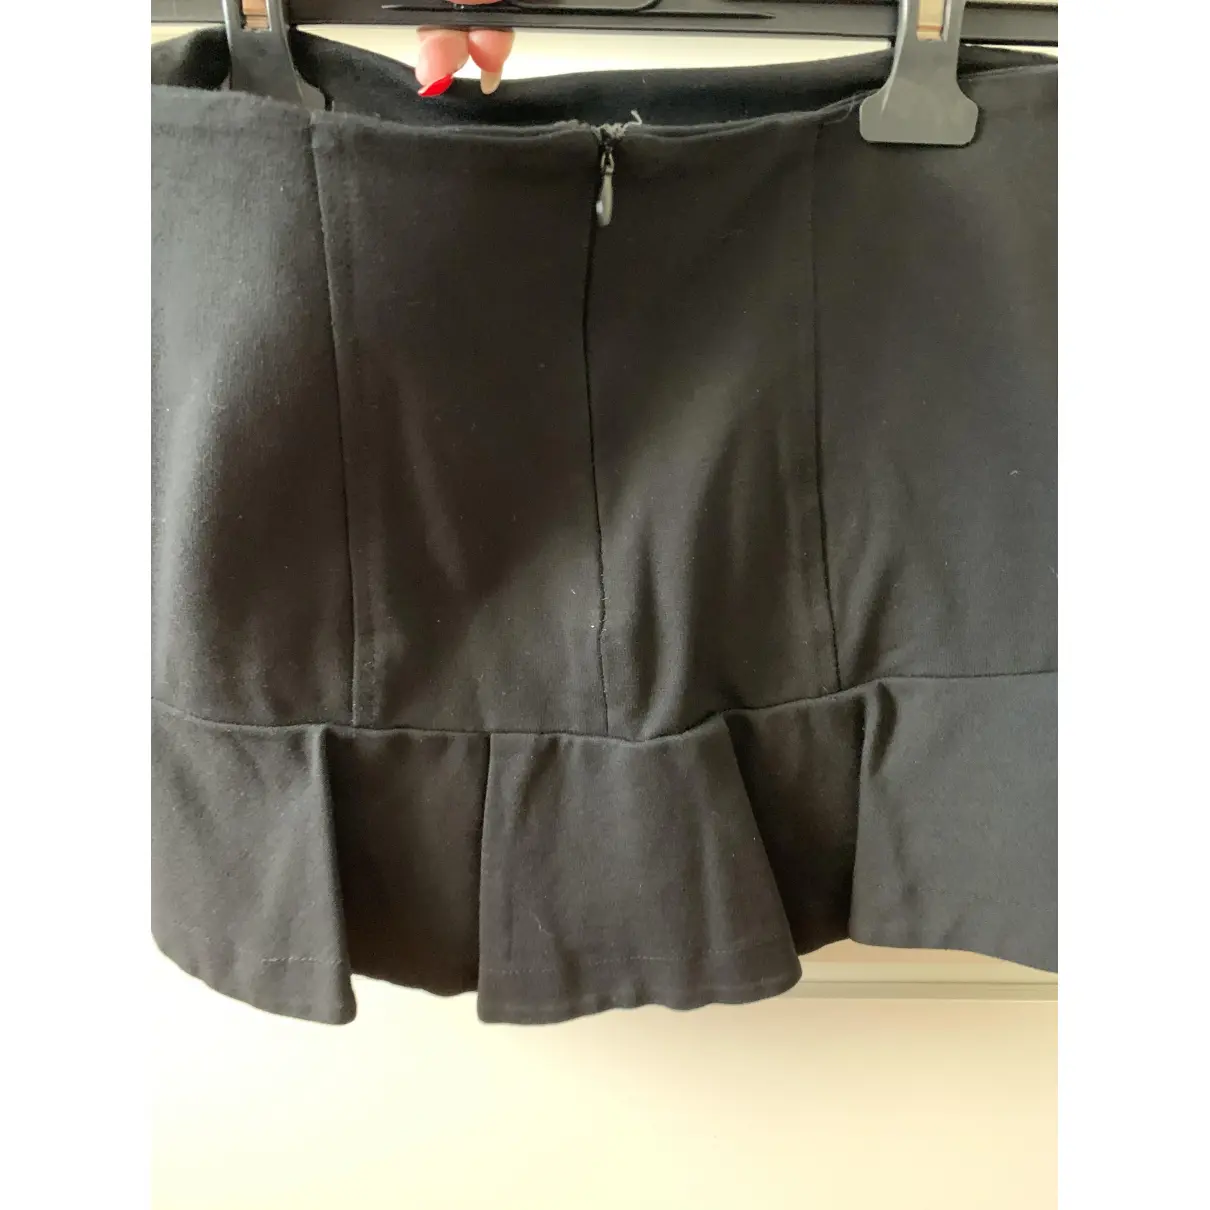 Buy Impérial Mini skirt online